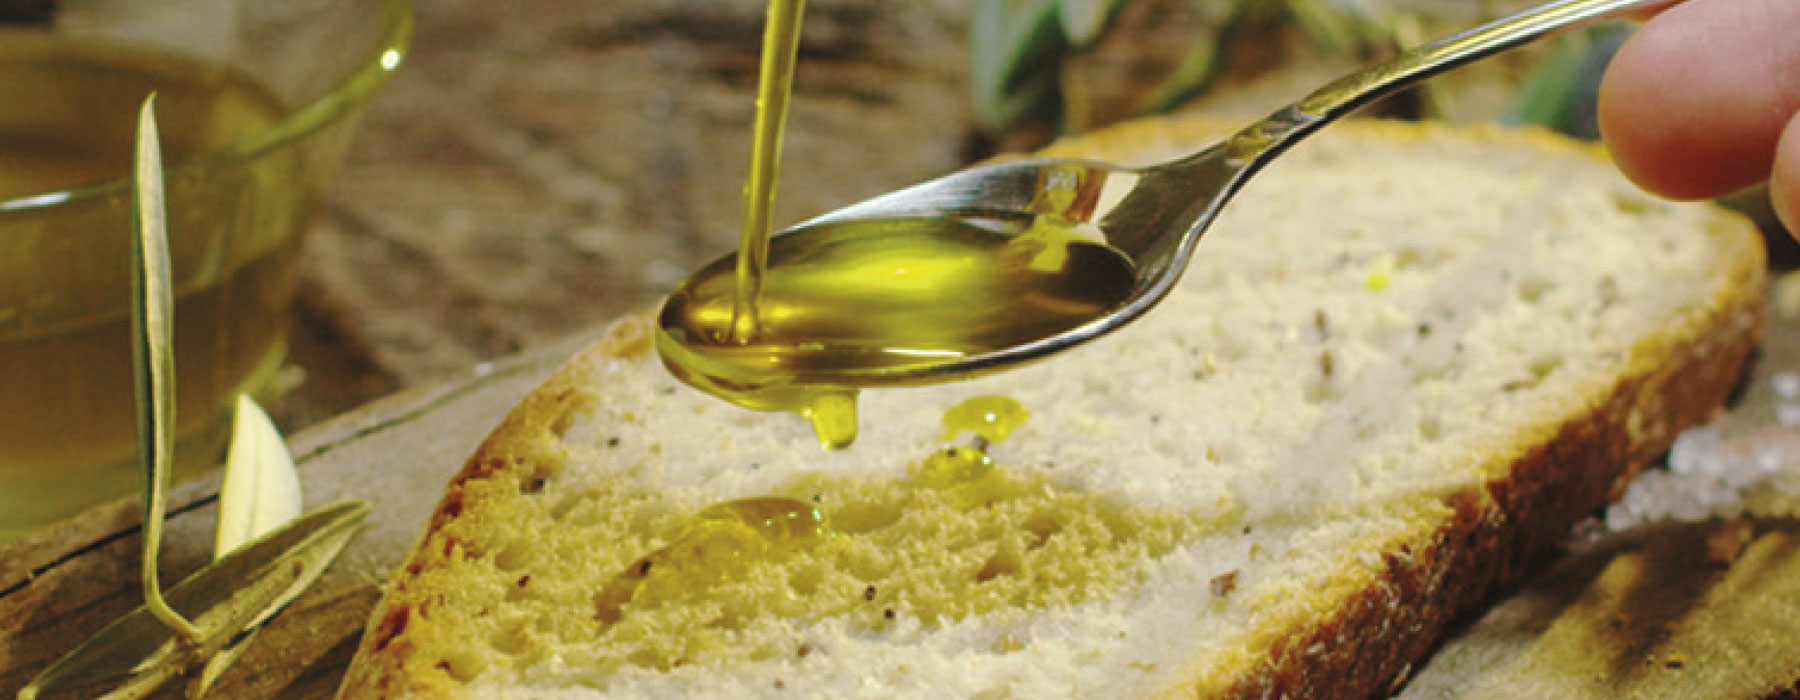 Детям можно оливковое масло. Хлеб с оливковым маслом. Оливковое масло в чашечке. Оливковое масло фон. Оливковое масло Тунис.